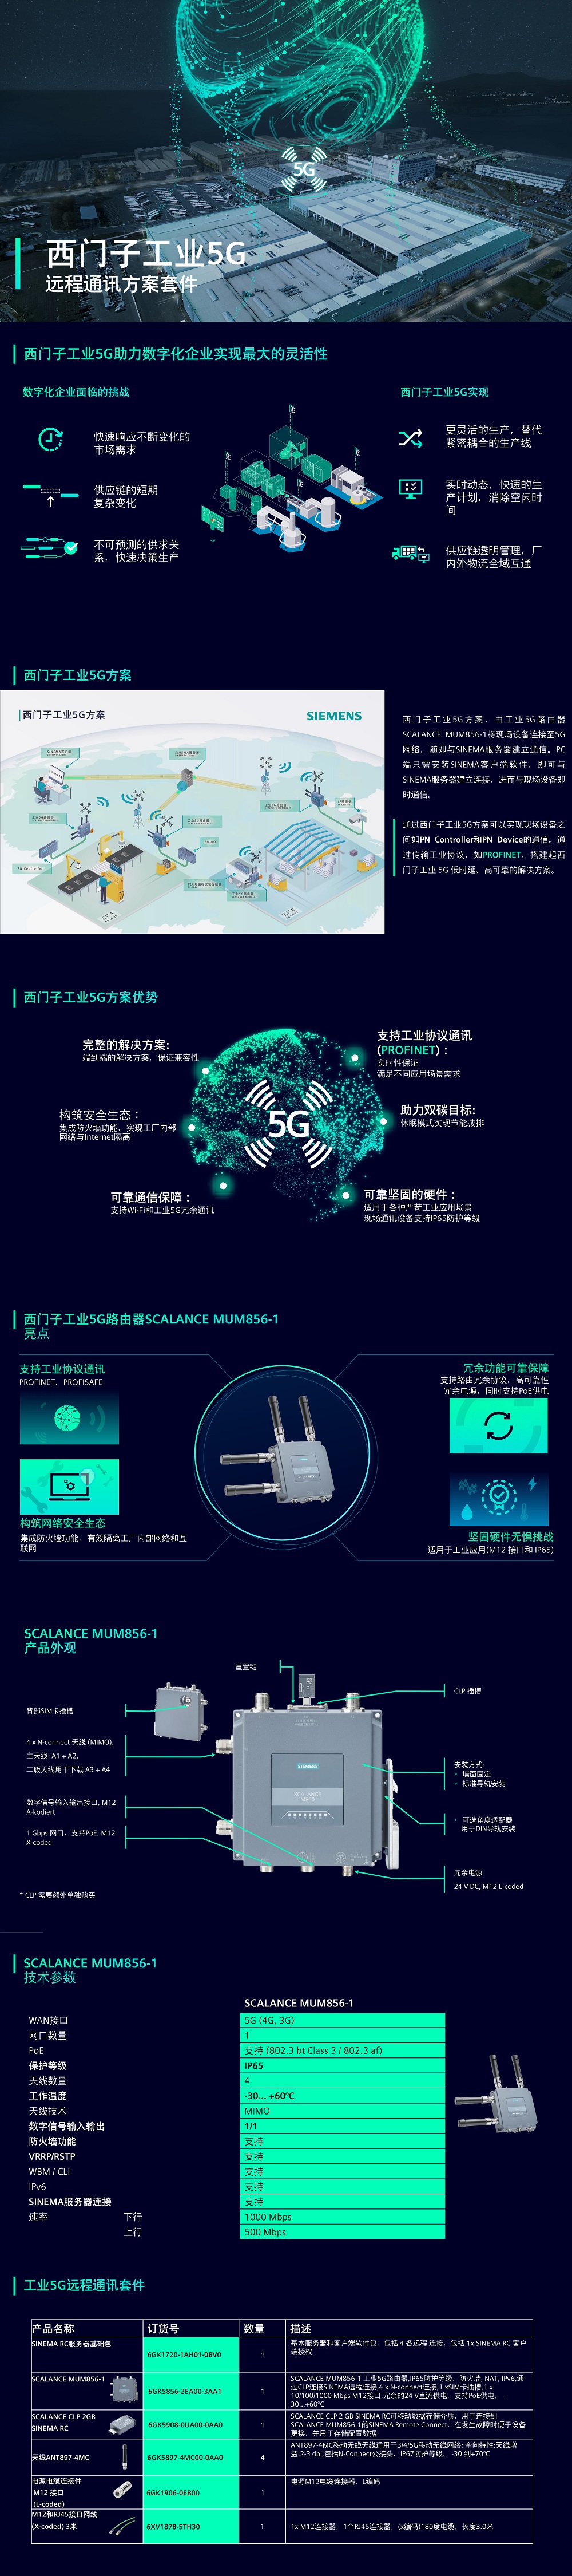 SIEMENS工业5G远程通讯套件-1.jpg